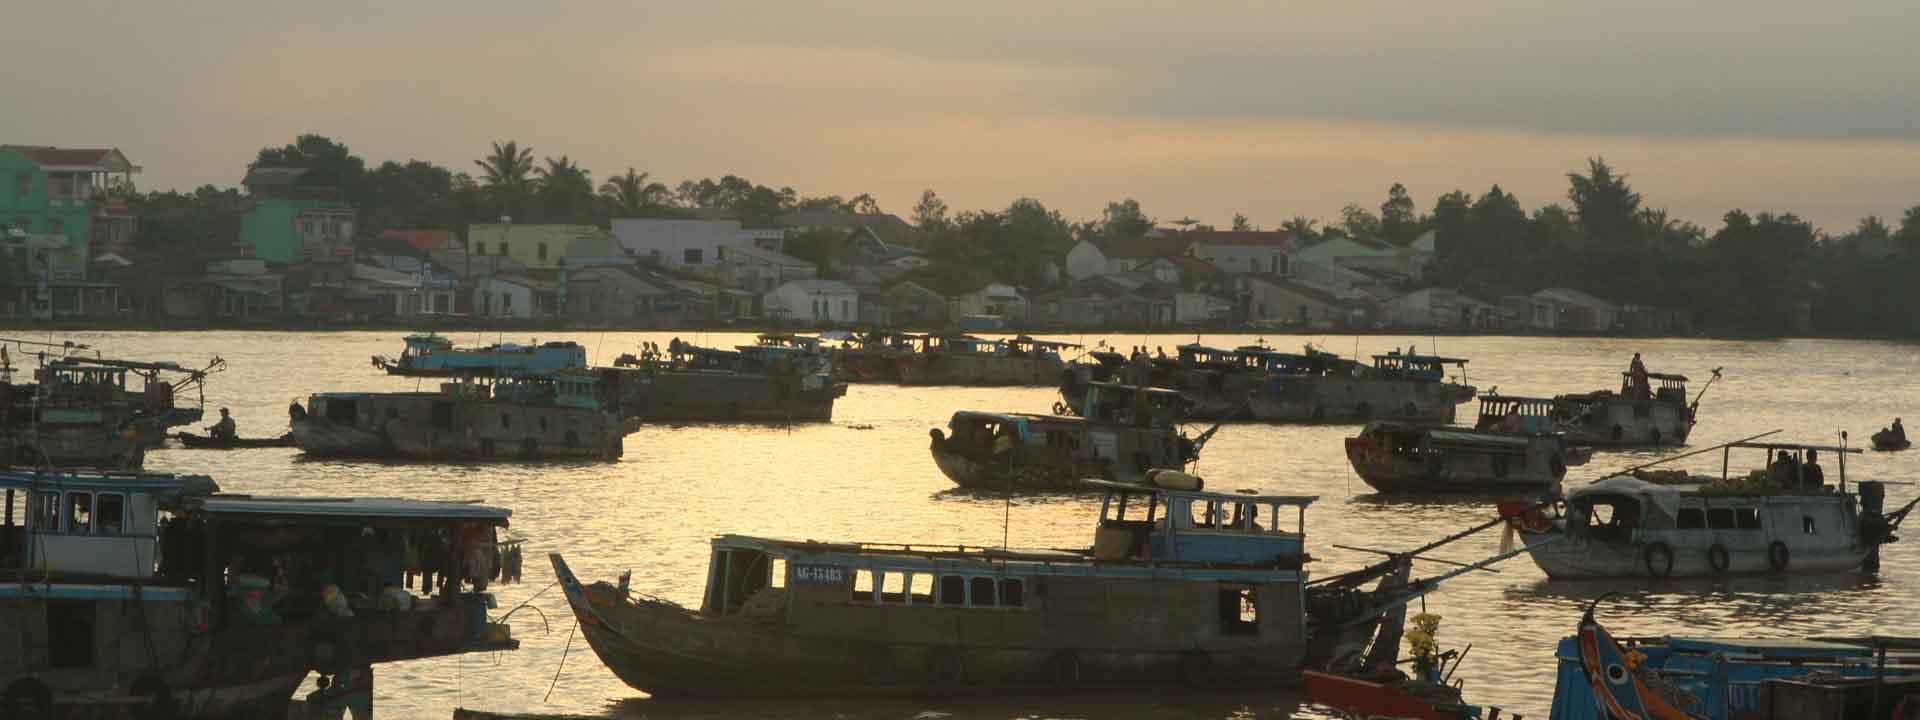 Biking & Sampan Boat Tour in Mekong 2 Days